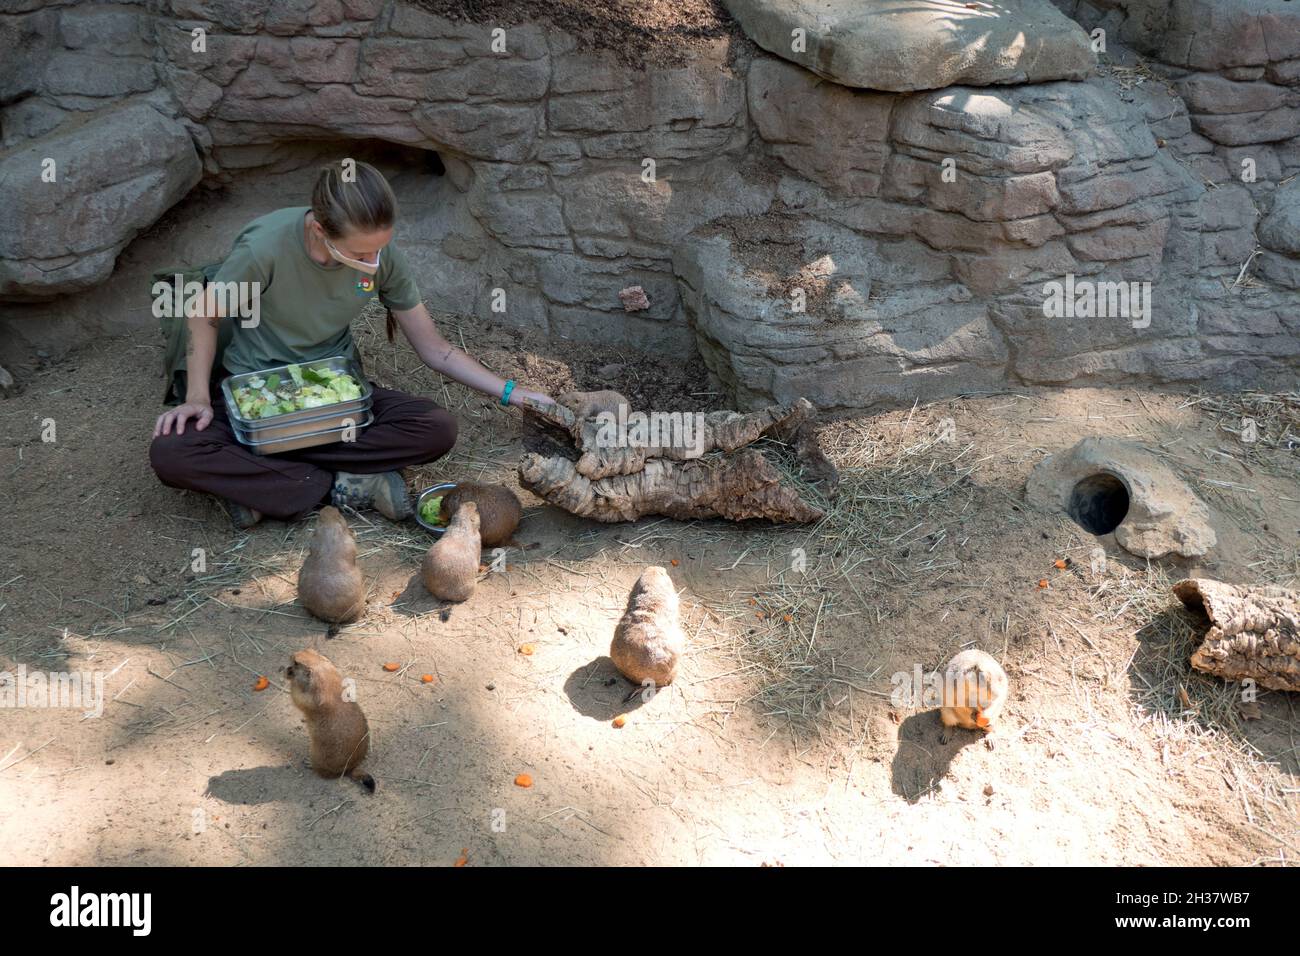 Barcelona Zoo mit Frau, die als Hüterin arbeitet und Präriehunde füttert. Mitarbeiter bei der Arbeit mit Tieren und bei der Abgabe von Futter im Käfig bei zoologischen gard Stockfoto